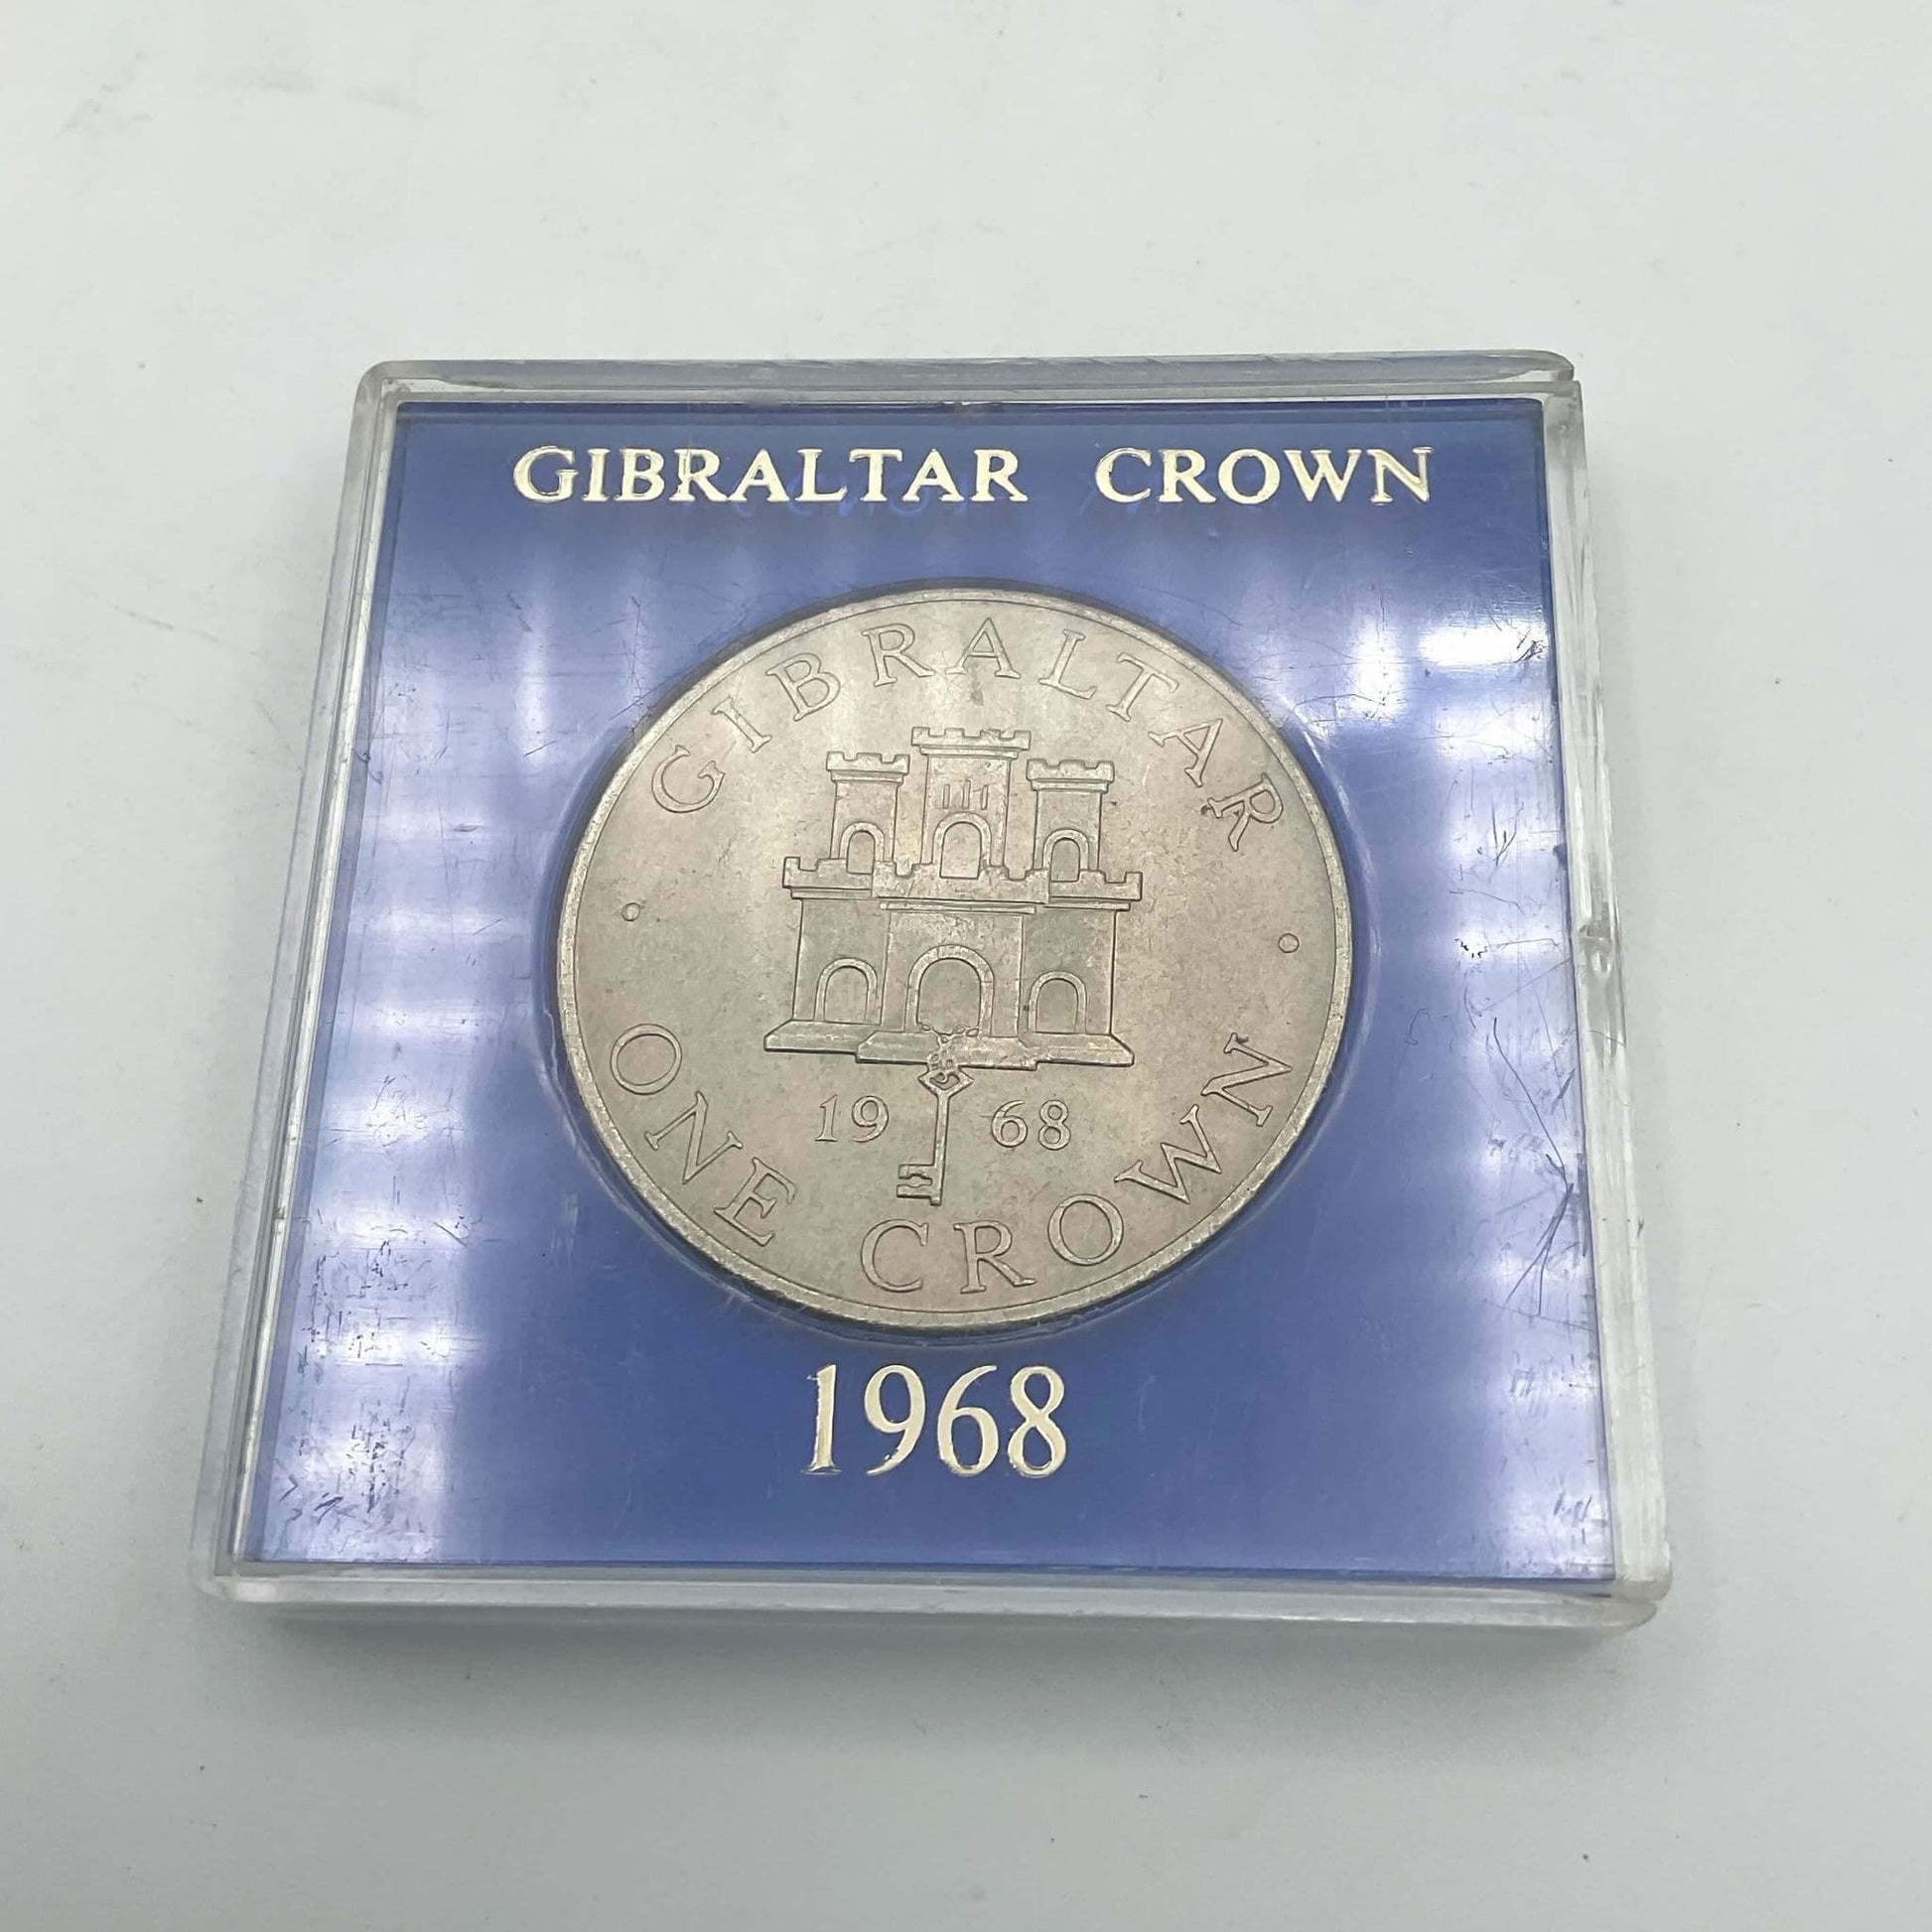 Silver Gibraltar Crown coin in a blue case